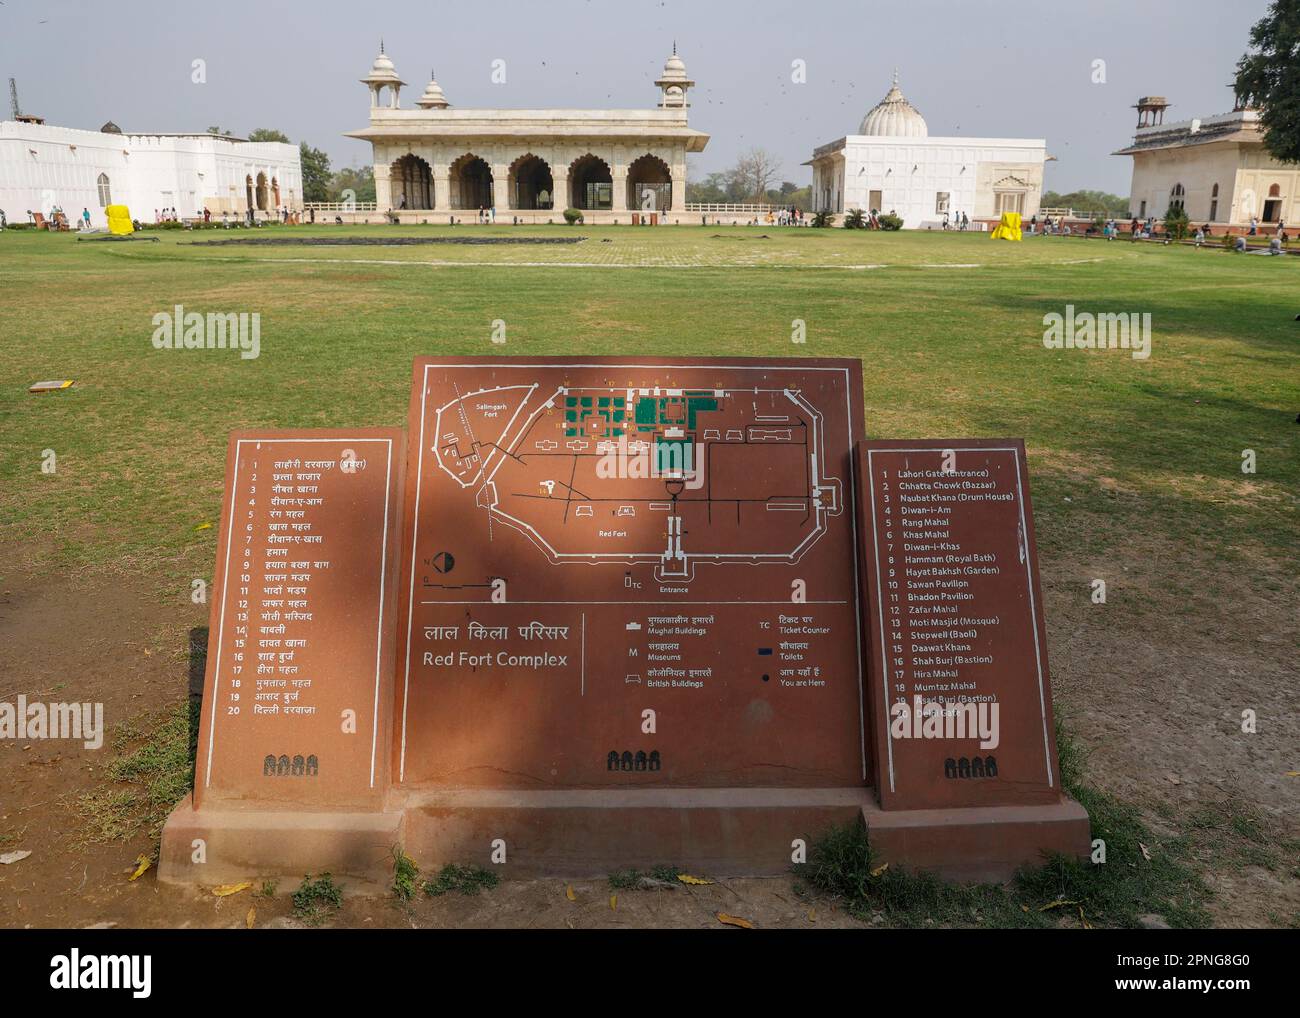 Carte du fort Rouge avec les bâtiments les plus importants, dans le milieu Diwan i Kas, sur la droite Khas Mahal et rang Mahal, Delhi, Inde Banque D'Images